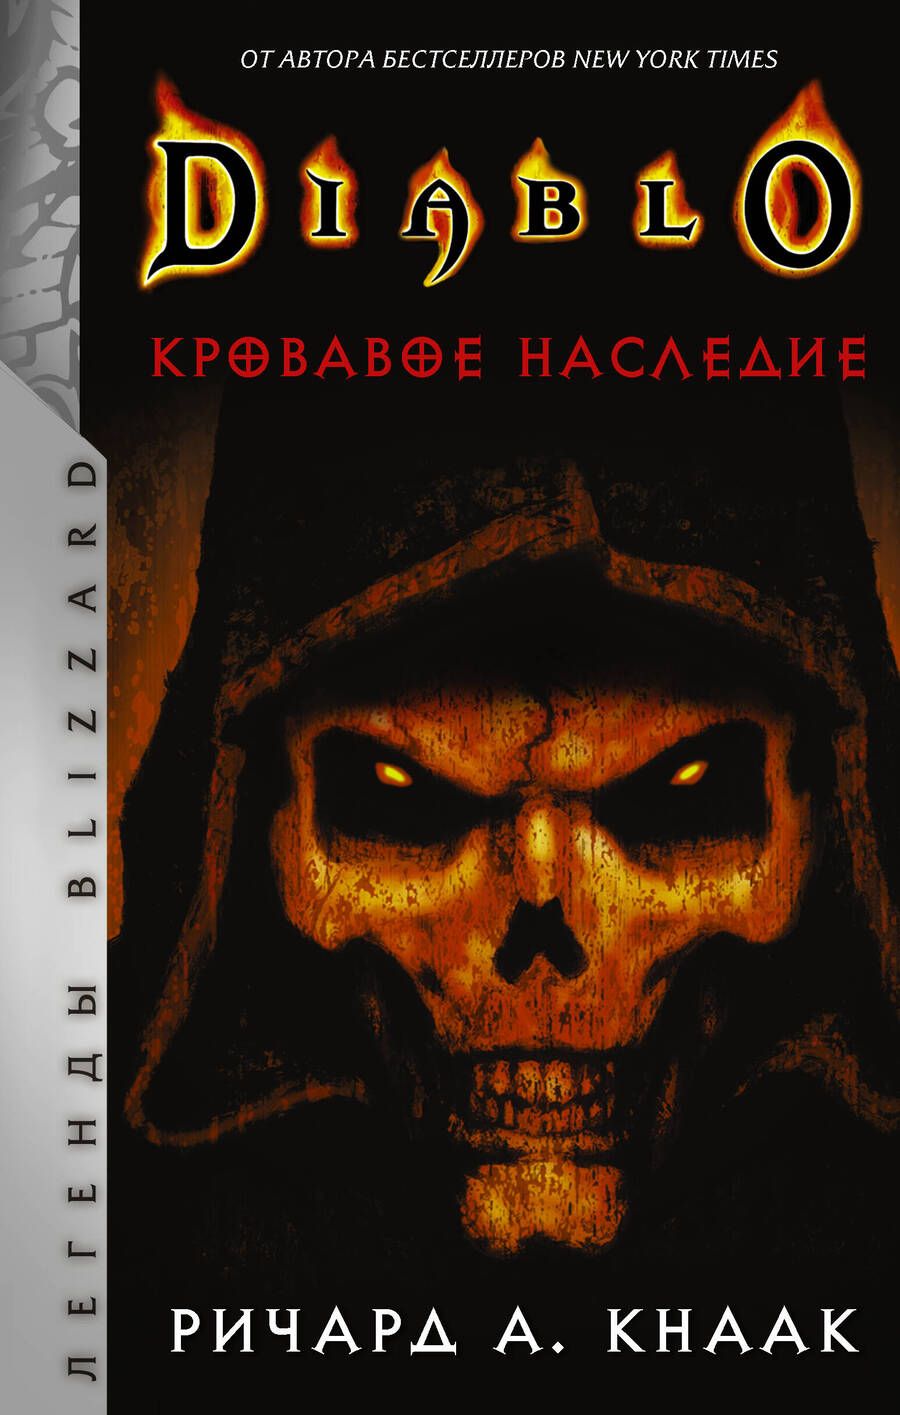 Обложка книги "Кнаак: Diablo. Кровавое наследие"